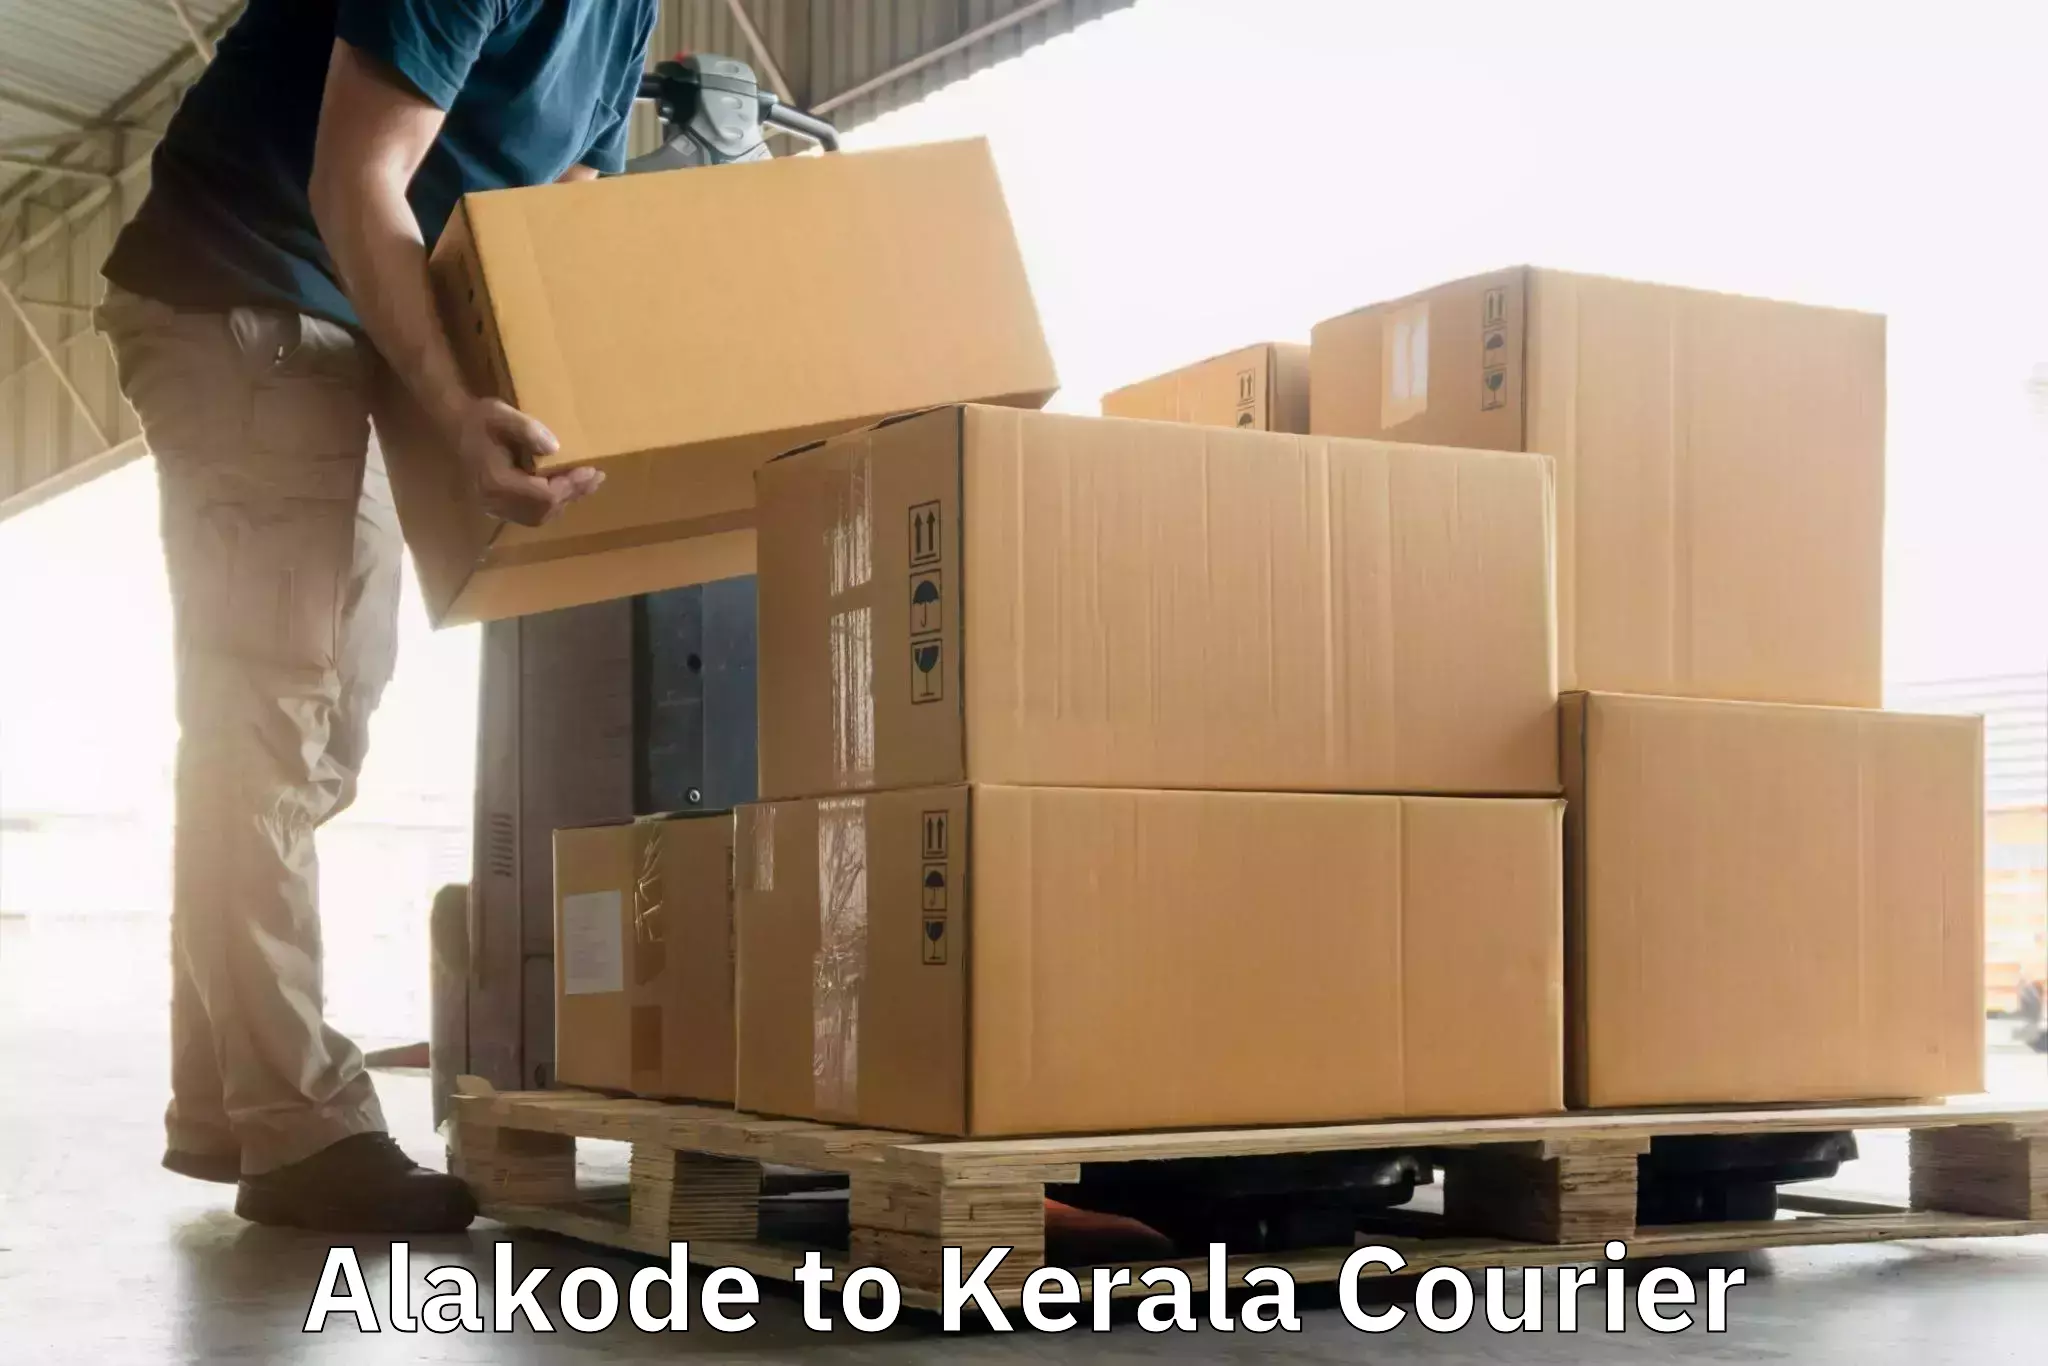 Express package handling Alakode to Kottarakkara